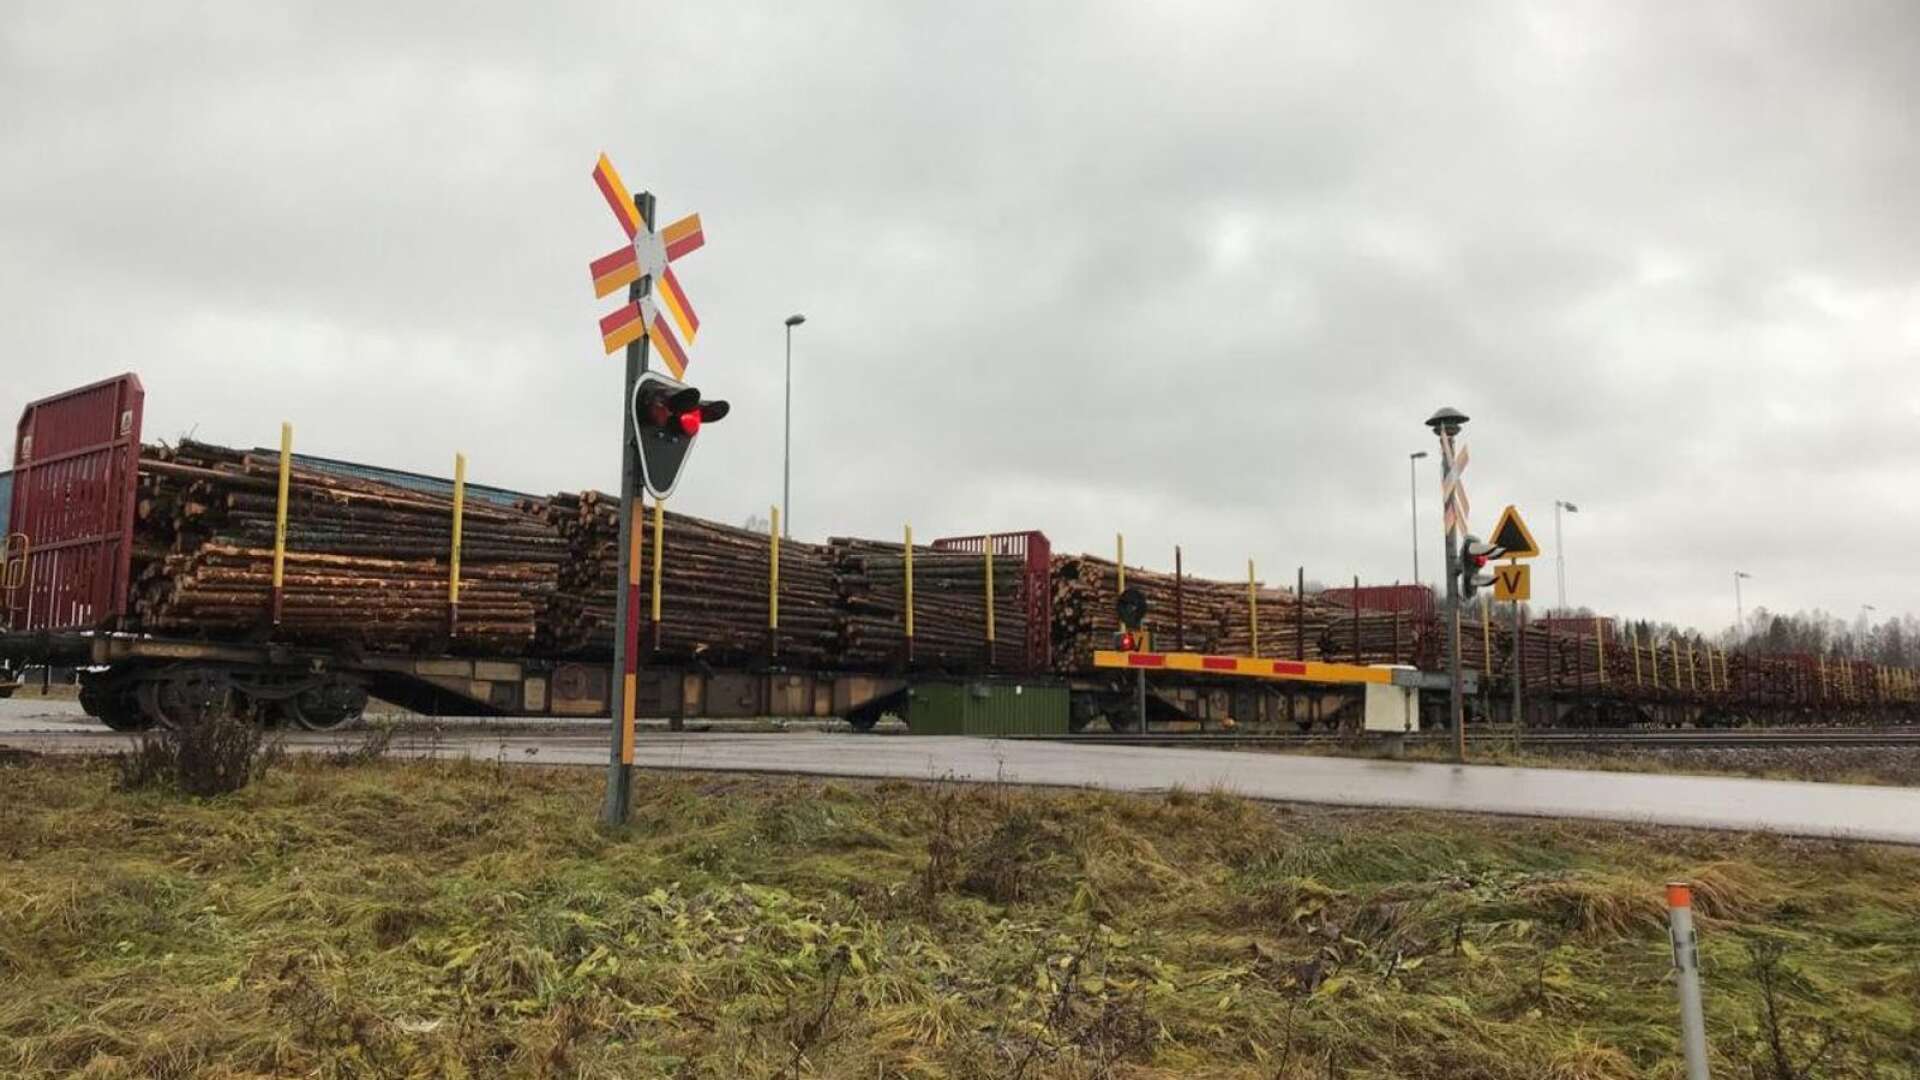 400 000 kubikmeter virke beräknas årligen kunna omlastas. Det motsvarar 7 000 lastbilstransporter som ska kunna gå på tåg från Bäckefors till Värö.